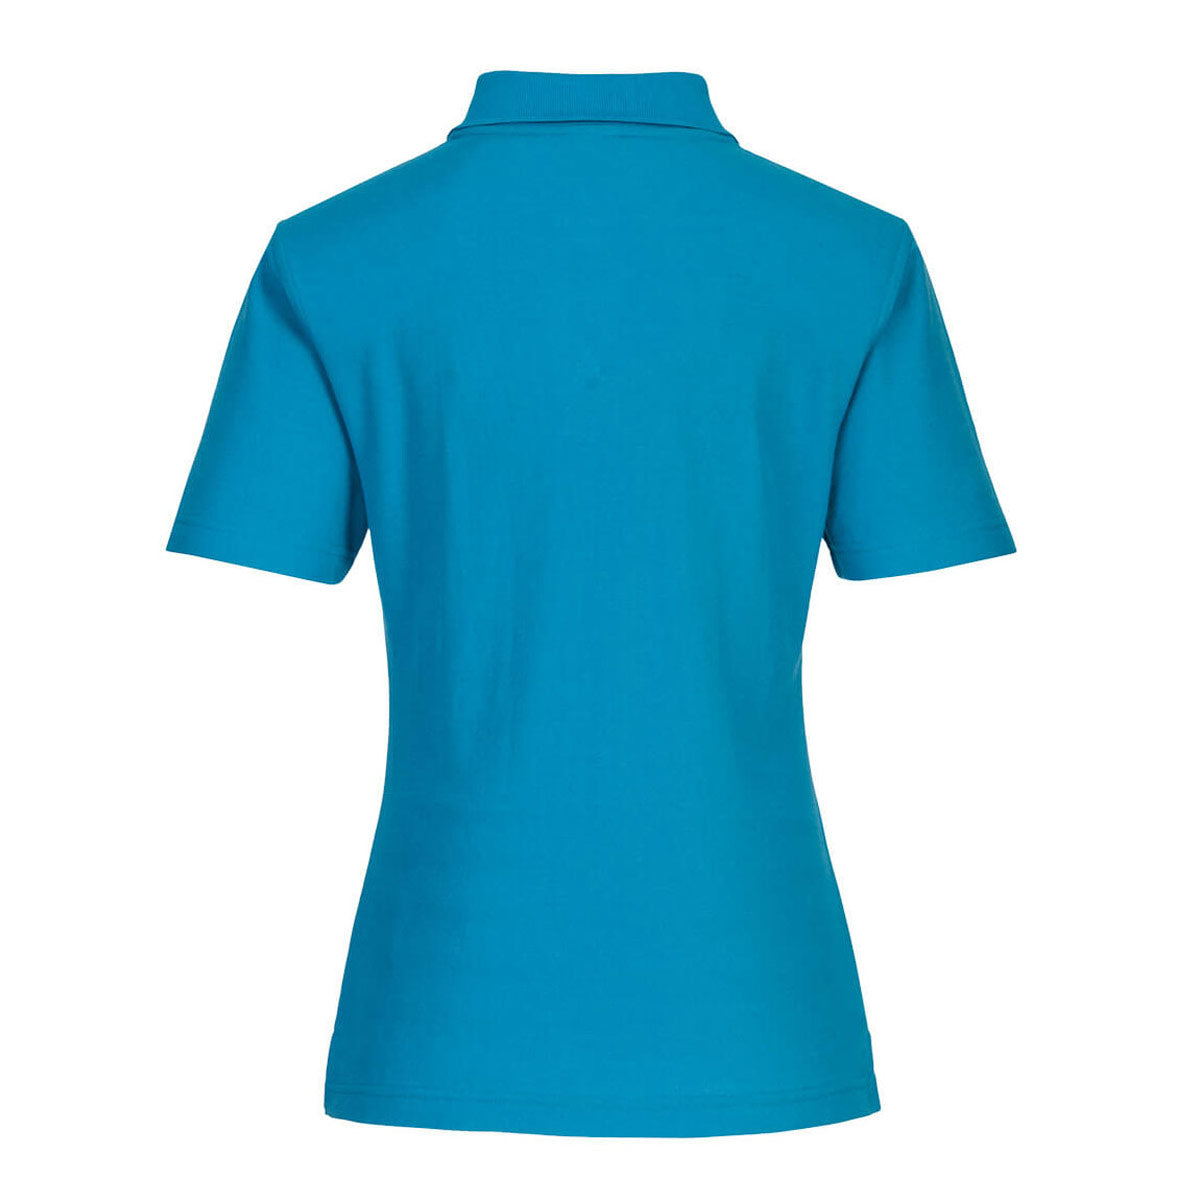 Poloshirt til damer - Vand blå - Størrelse: L